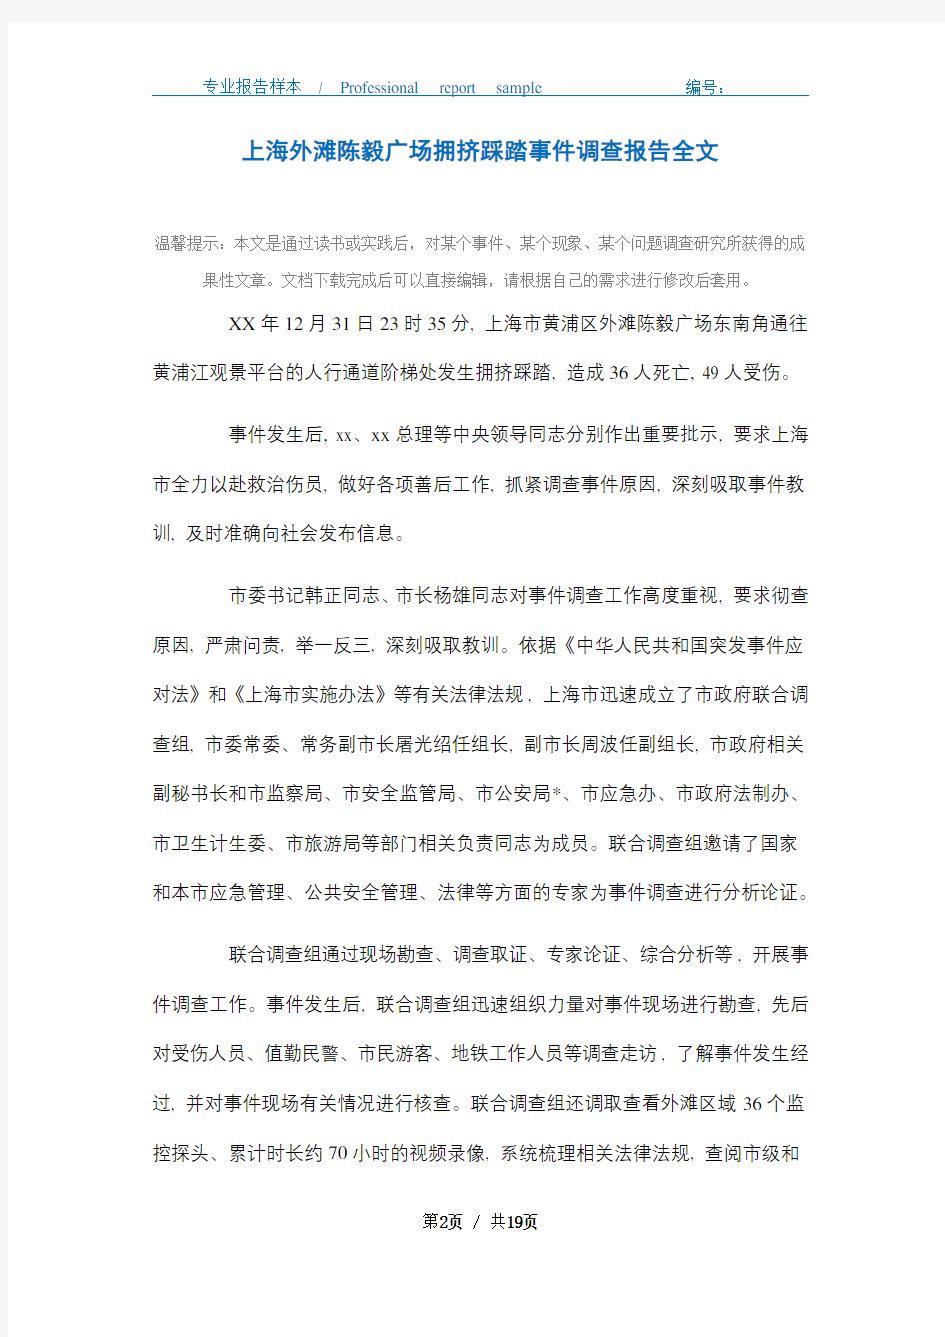 2021年上海外滩陈毅广场拥挤踩踏事件调查报告全文